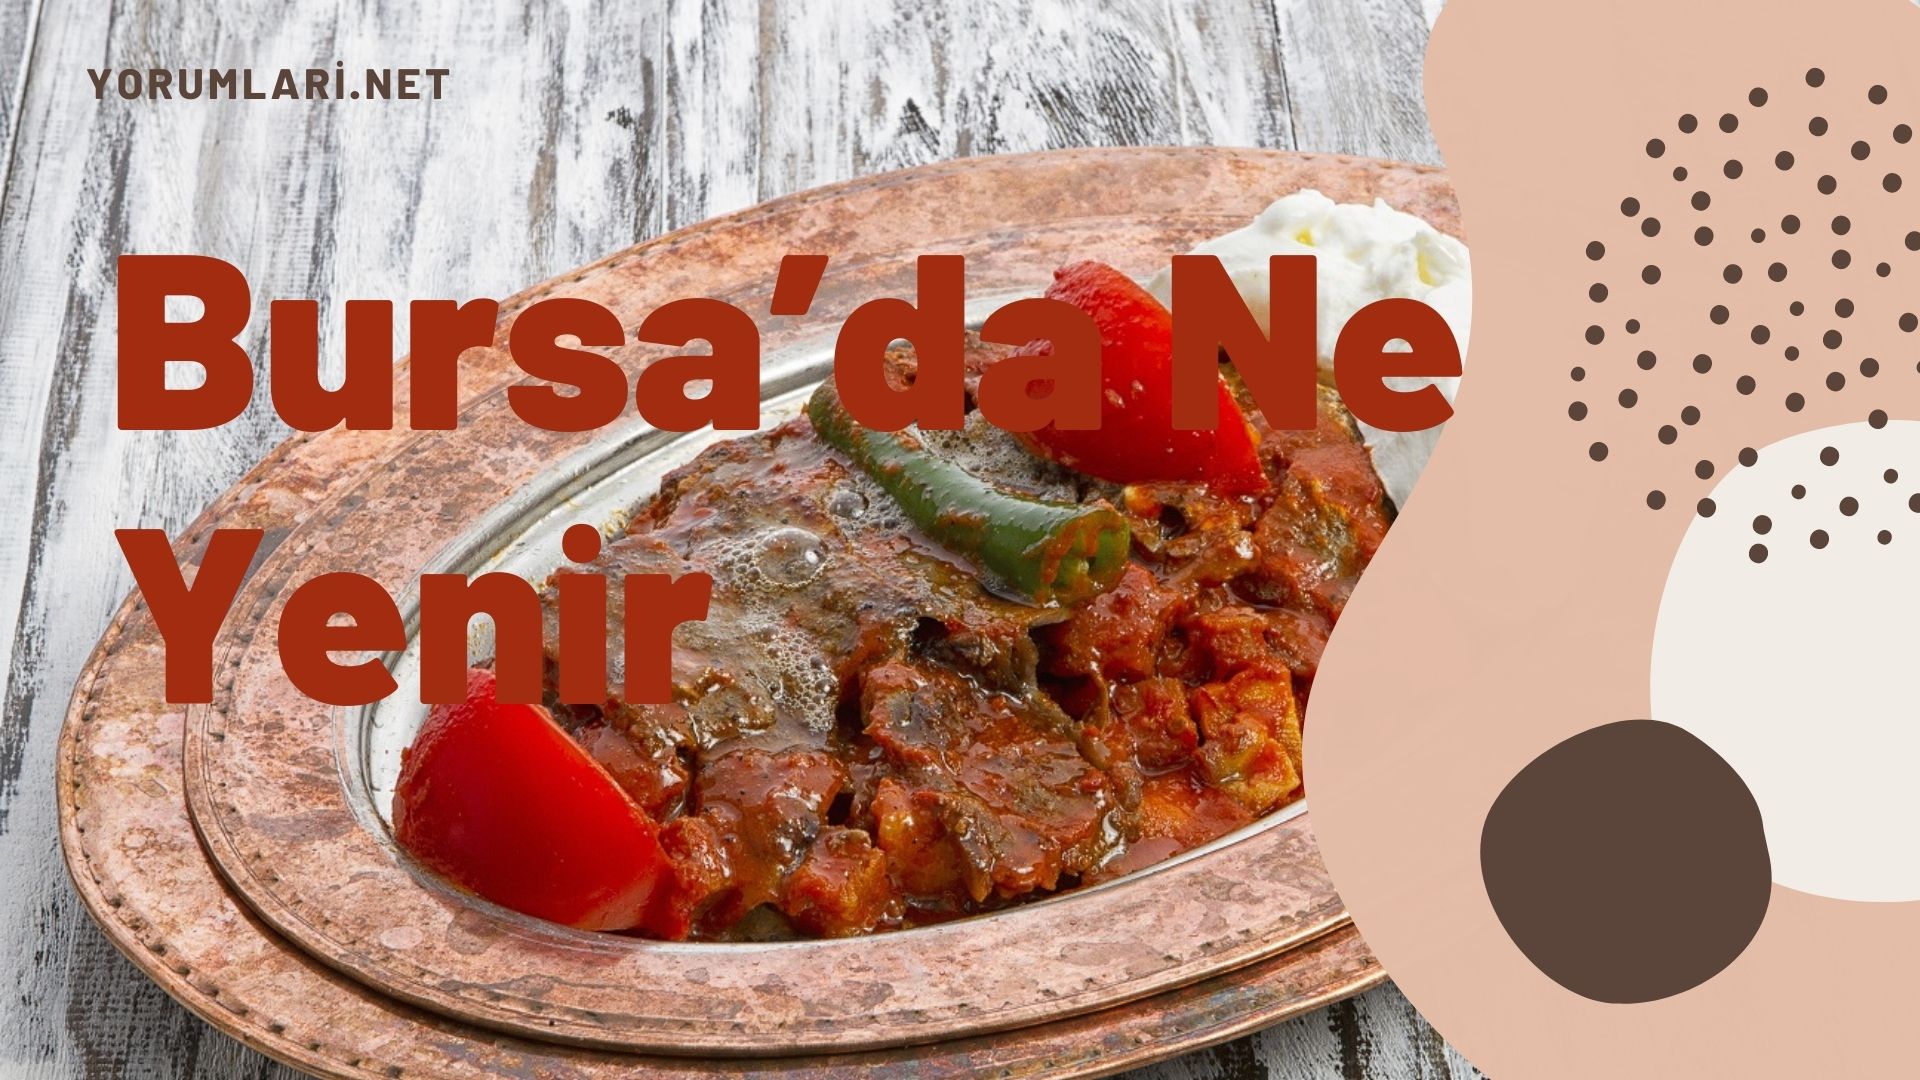 Bursa’da Ne Yenir | Bursa Yemekleri Yorumları